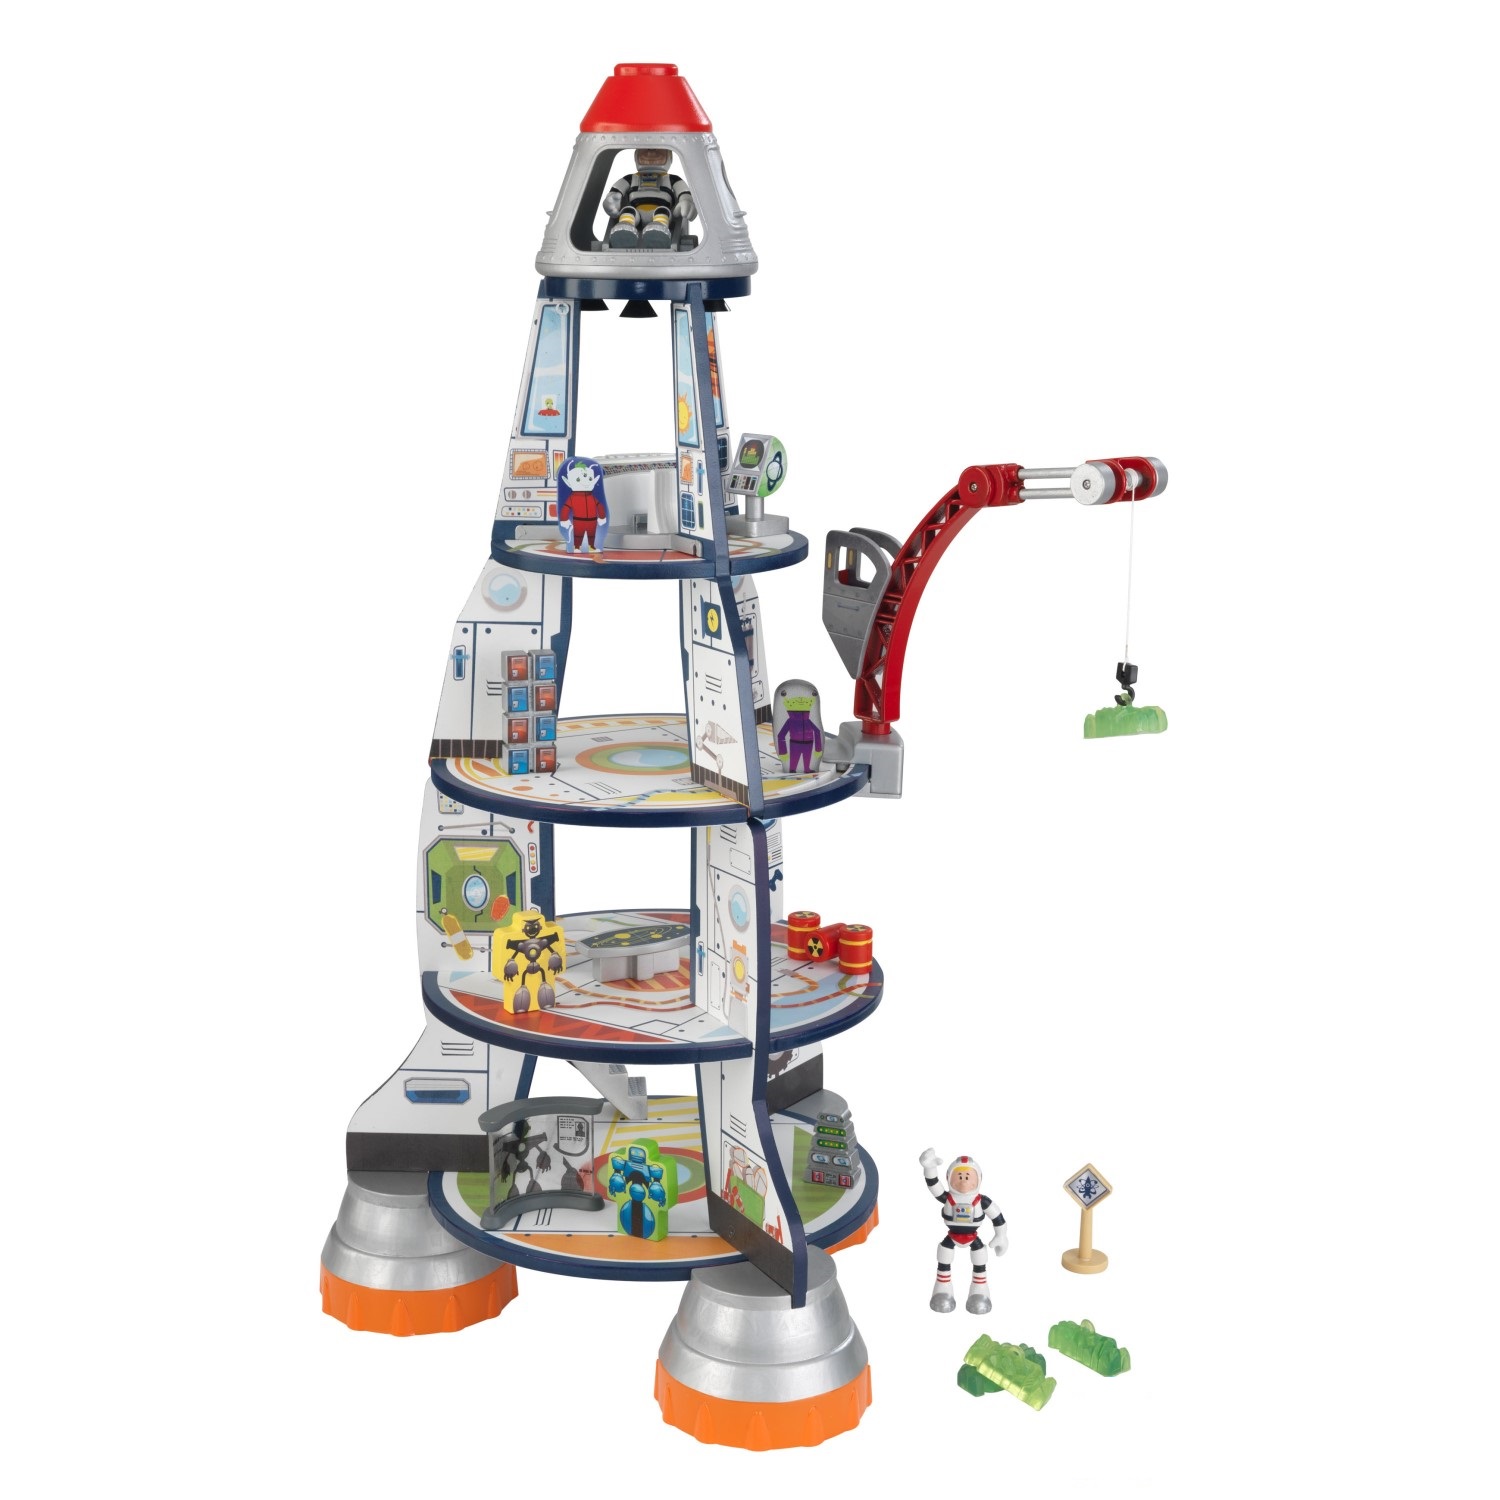 Kidkraft Rocket Ship Playset Dollhouse